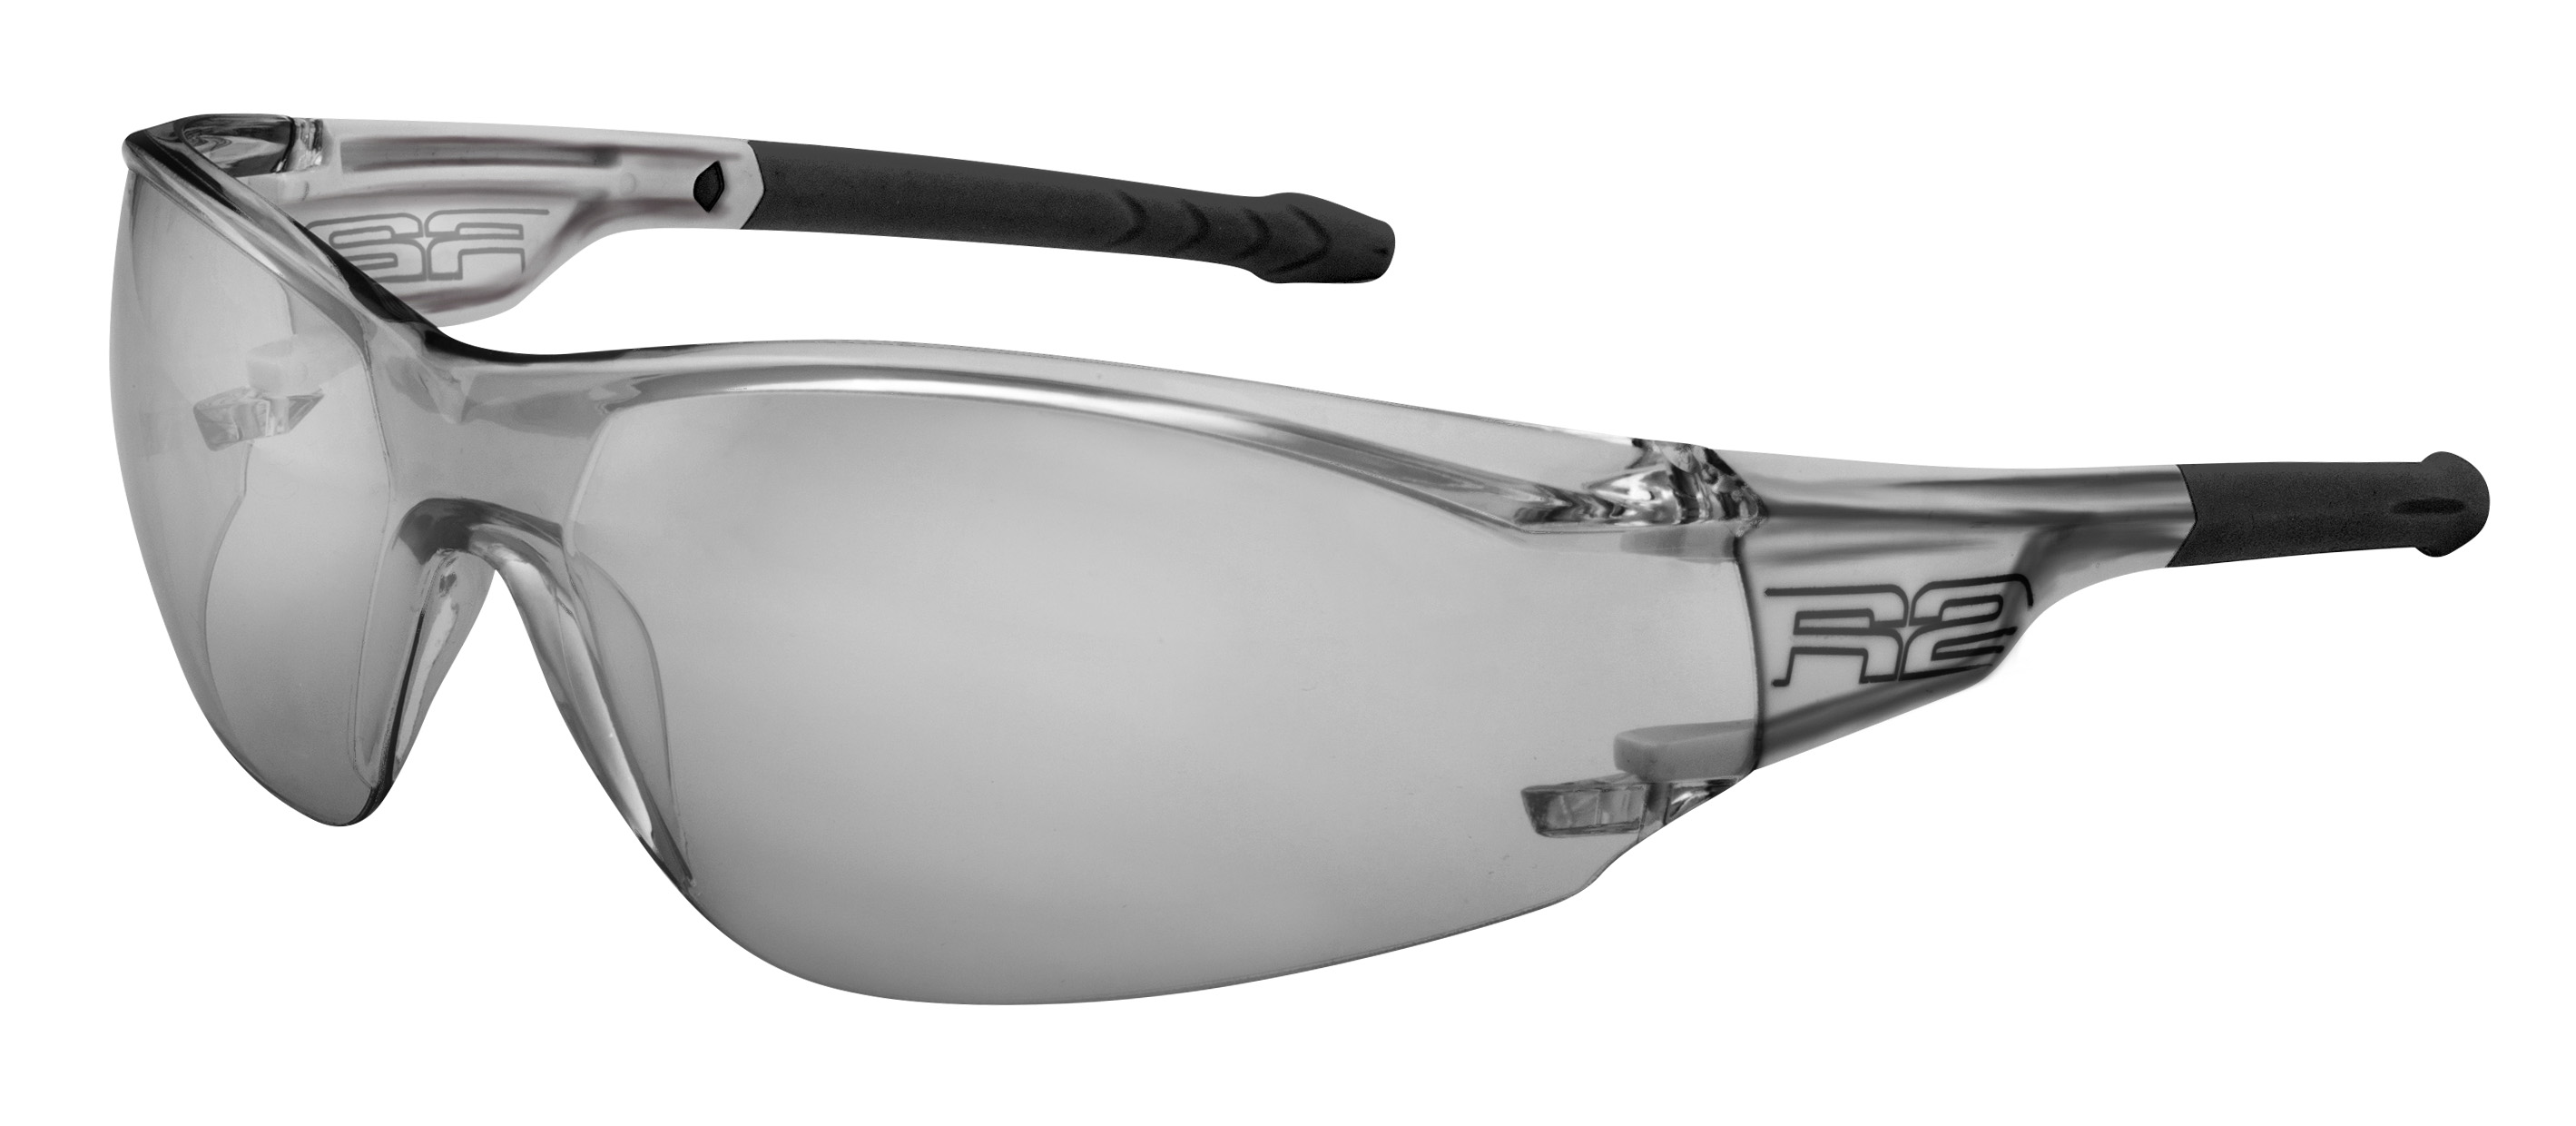 Sport sunglasses R2 ALLIGATOR AT087L Standard